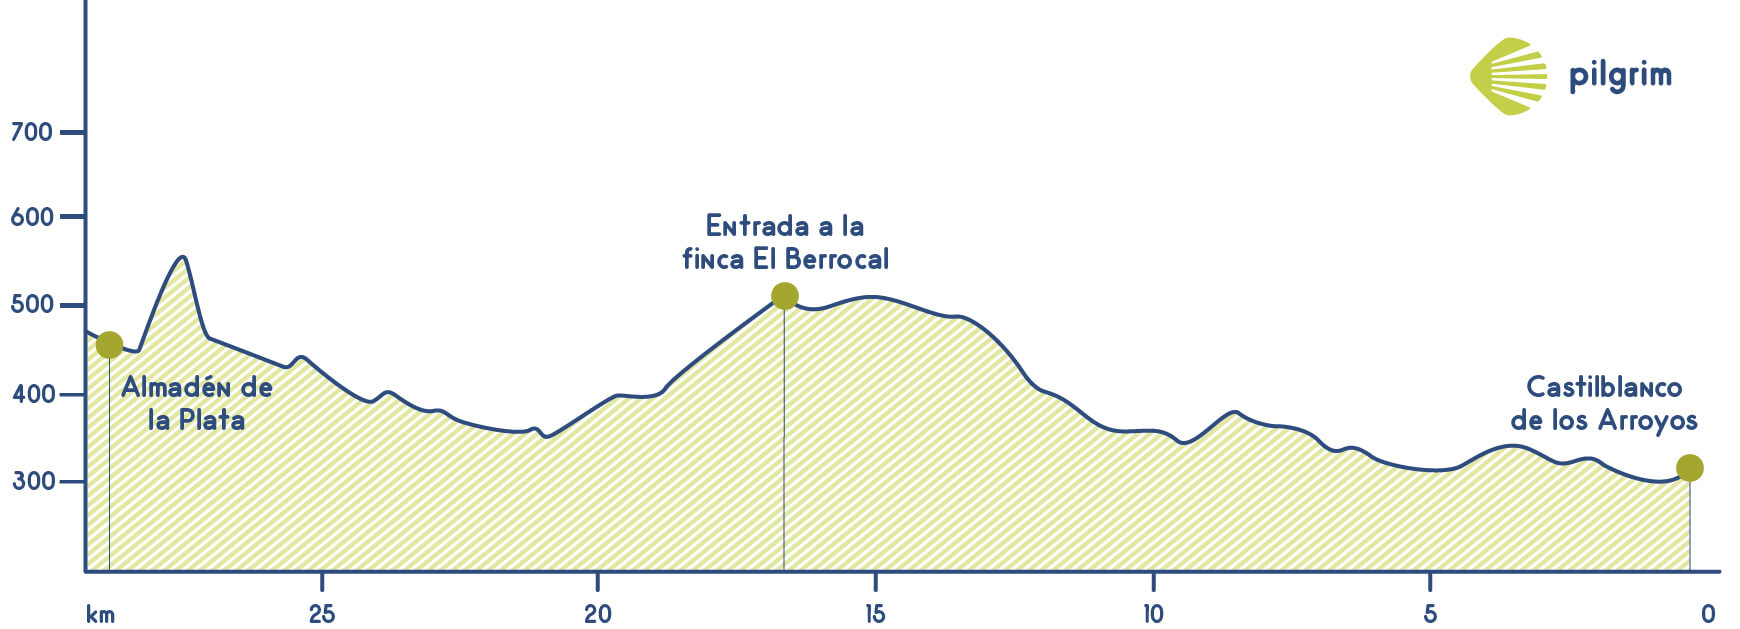 Stage 3 Vía de la Plata